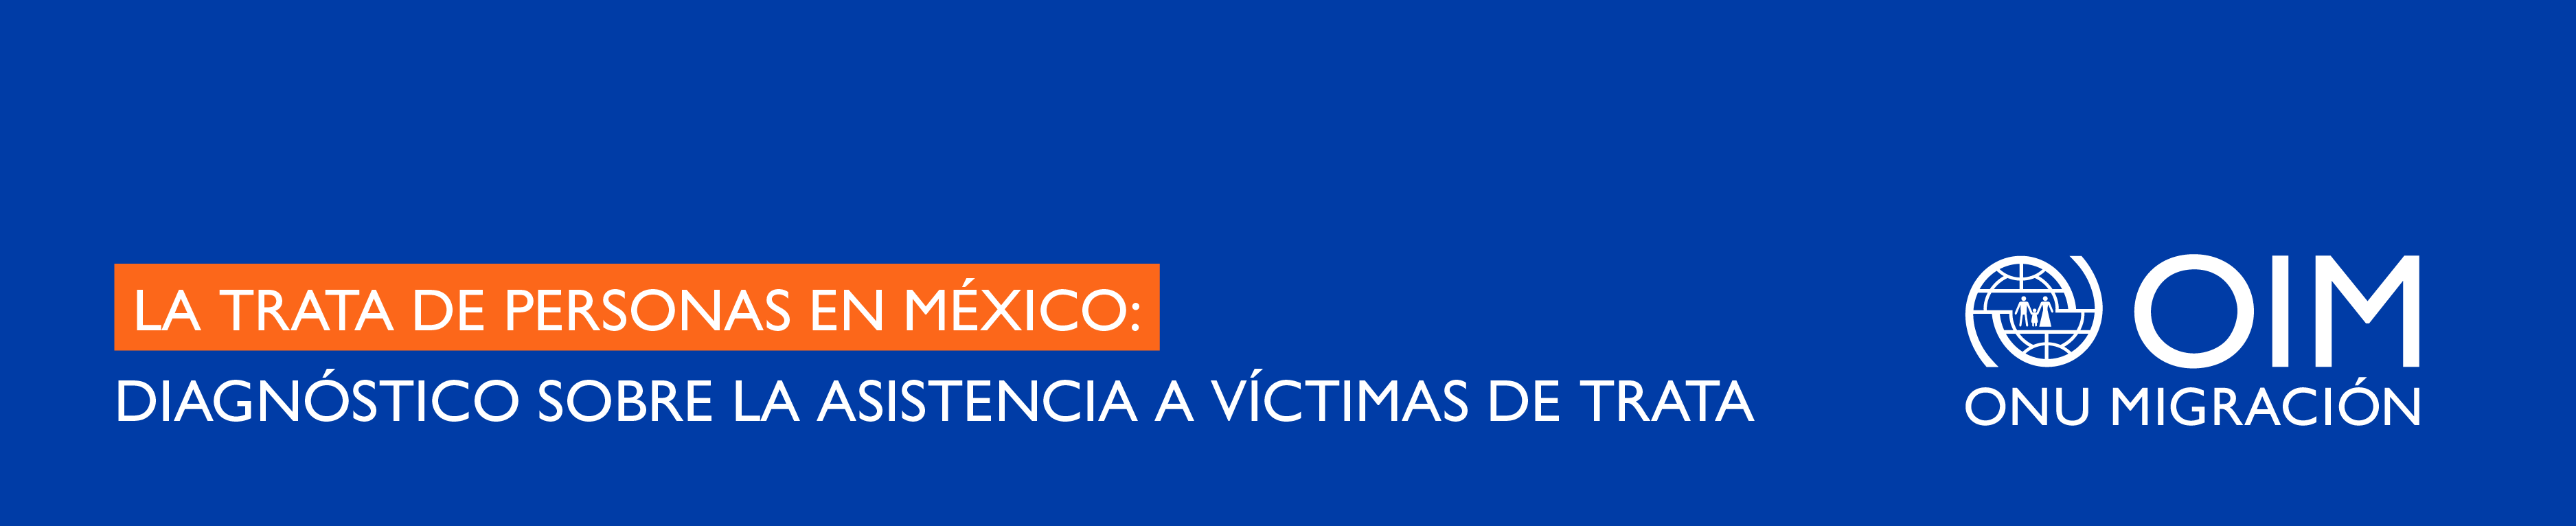 La trata de personas en México: diagnóstico sobre la asistencia a víctimas de trata